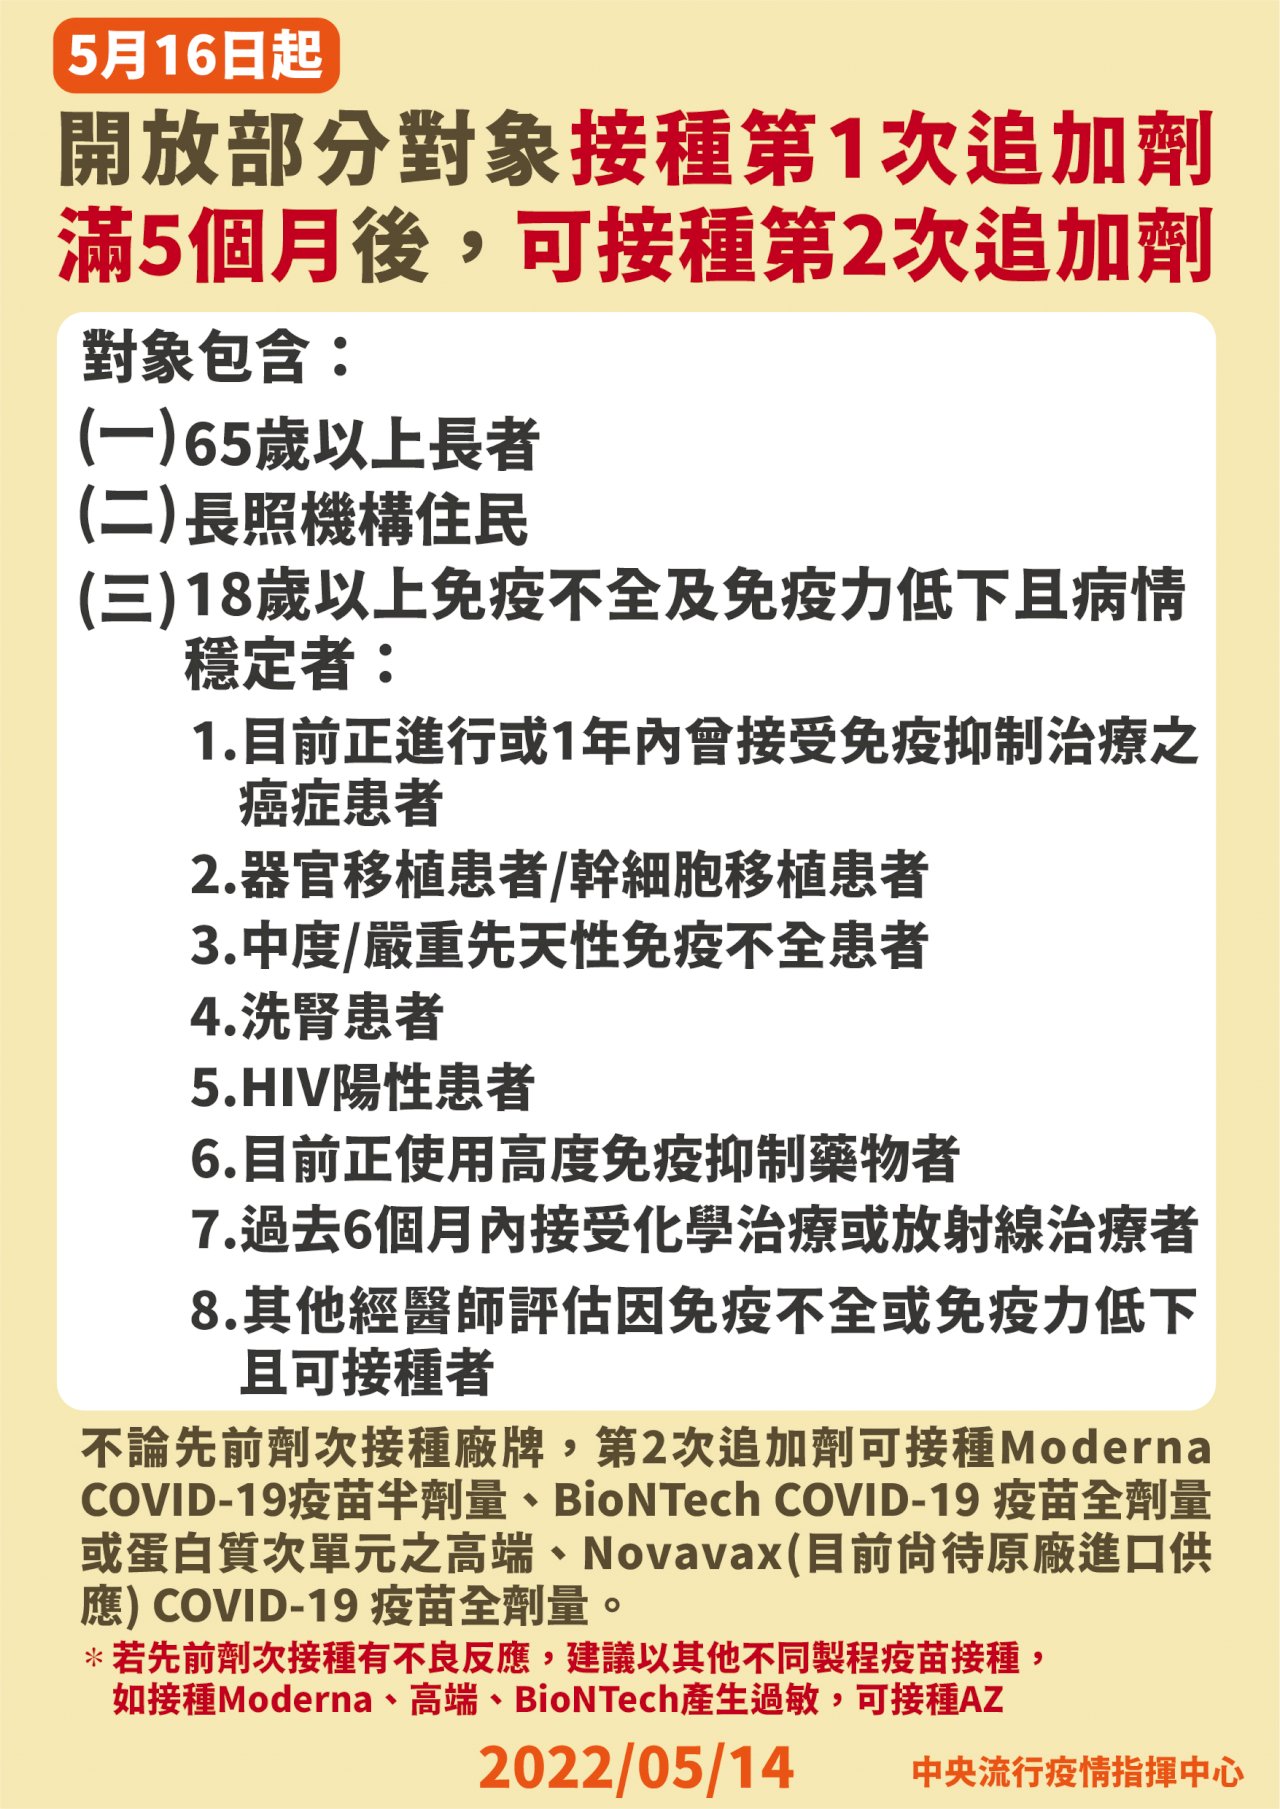 台湾の新型コロナウイルス感染症対策本部「中央感染状況指揮センター」が14日、台湾では新型コロナウイルスの市中感染が広がっており、中等症と重症患者を減らすため、5月16日から、満65歳以上の高齢者、長期ケア施設の入居者、病状が安定している満18歳の免疫不全疾患の患者と免疫力低下の患者に対して新型コロナワクチンの四回目接種（二回目の追加接種）を実施することを決めた。これらの人たちが、三回目の接種を受けてから五か月経てば5月16日から四回目の接種を受けるこが可能になる。（写真：「中央感染状況指揮センター」提供）